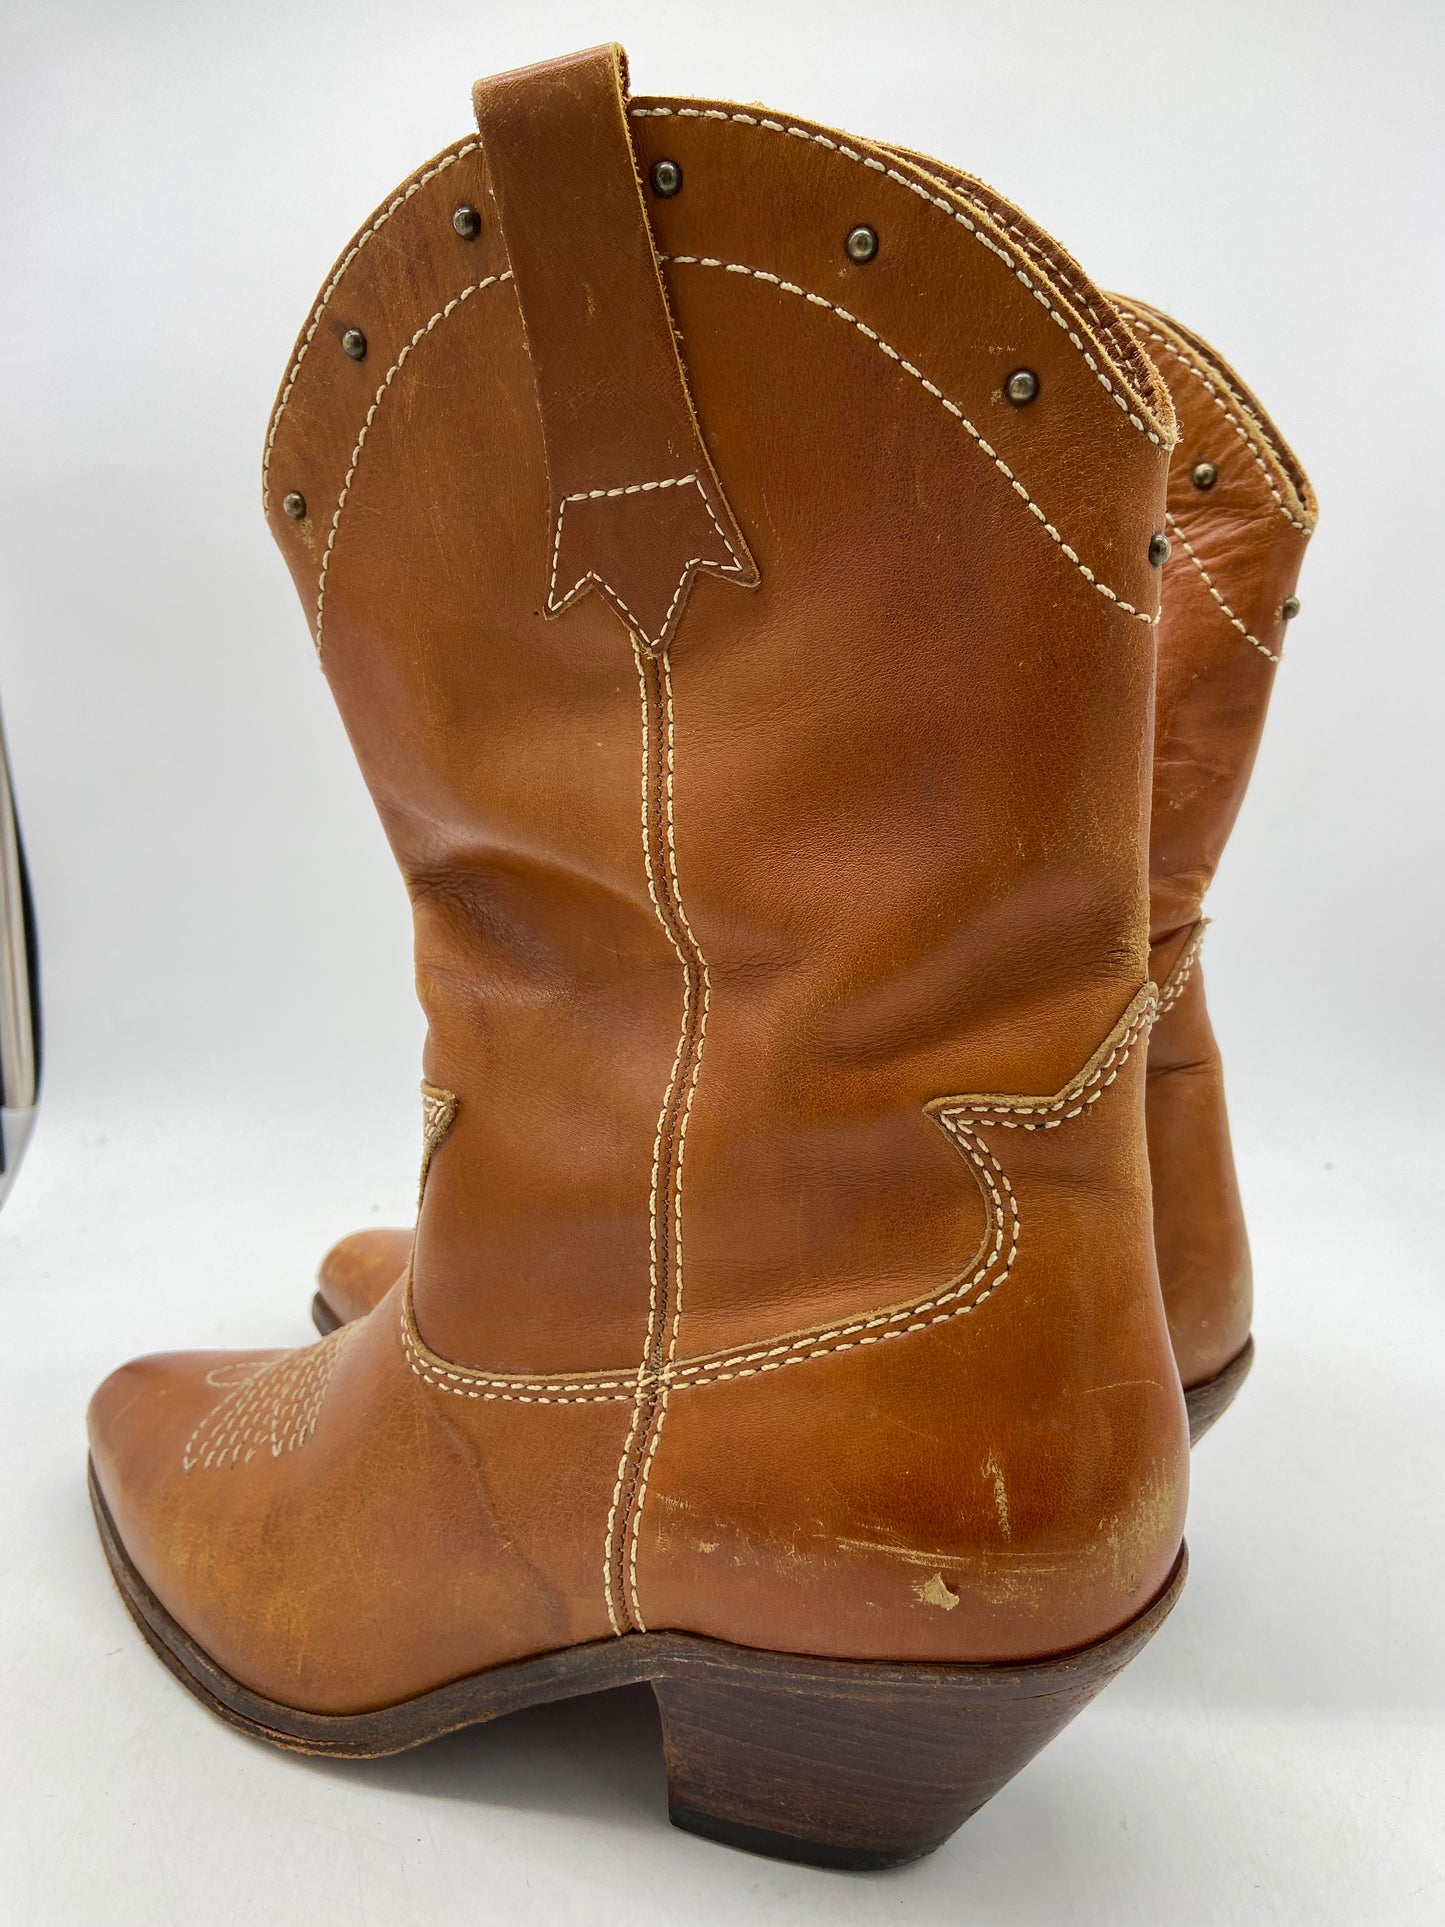 Chestnut Brown Beaded Heel Boots Sz 10.5D